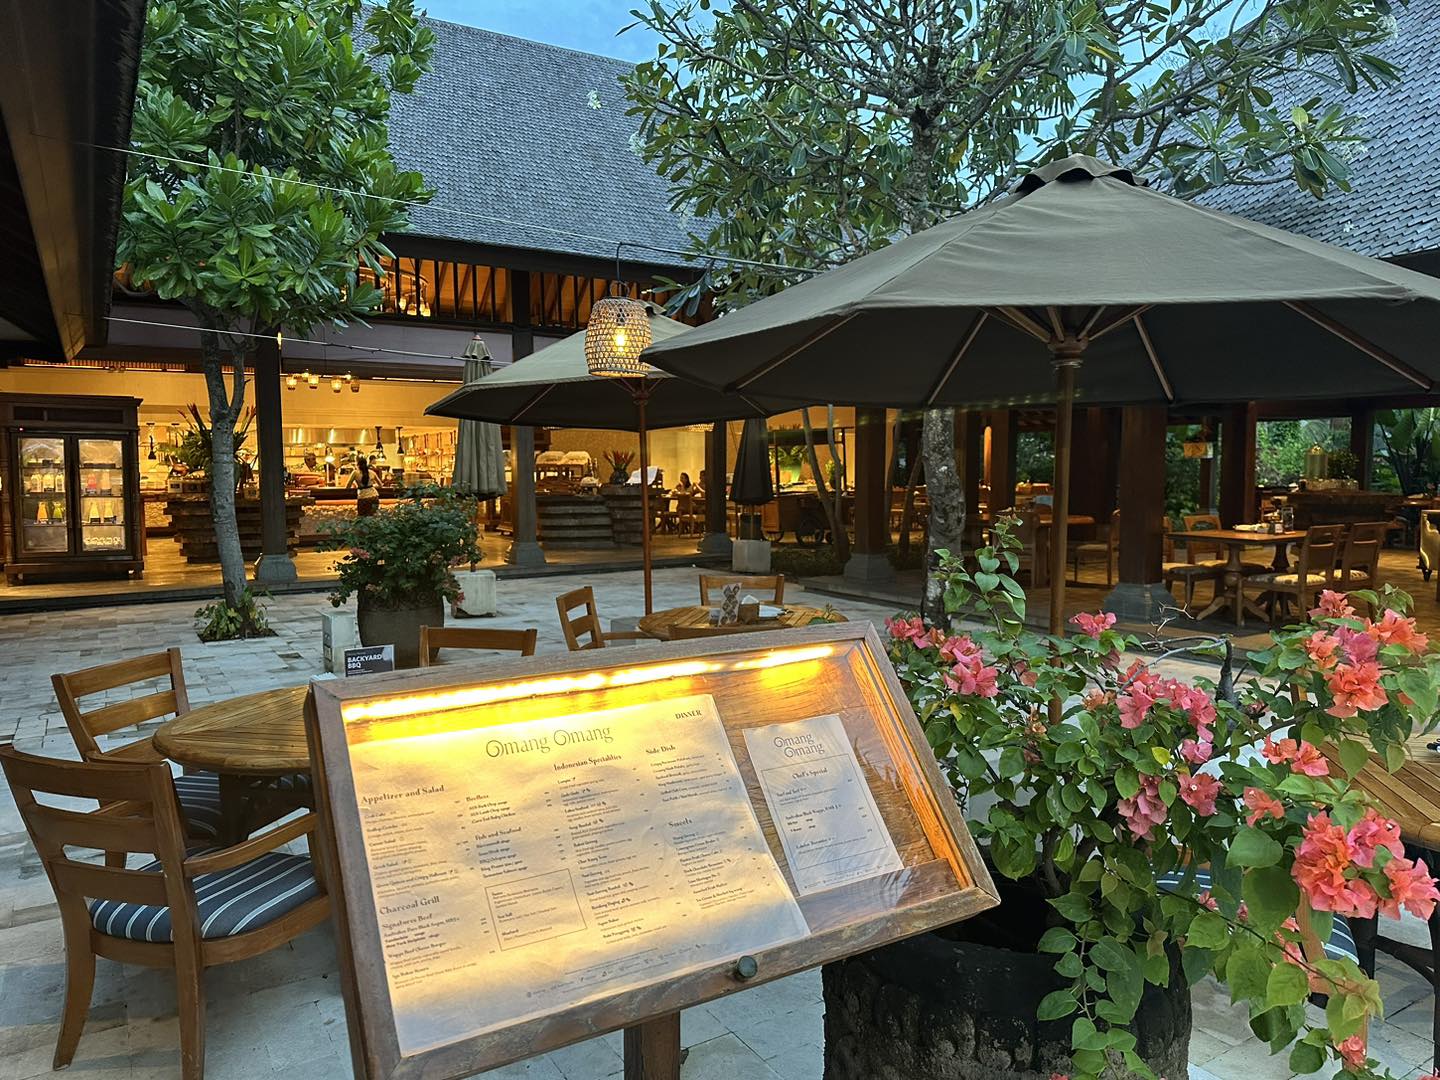 峇里 Hyatt Regency Bali︱峇里酒店 Hyatt旗下 用分換超抵！再加套房券輕鬆upgrade！